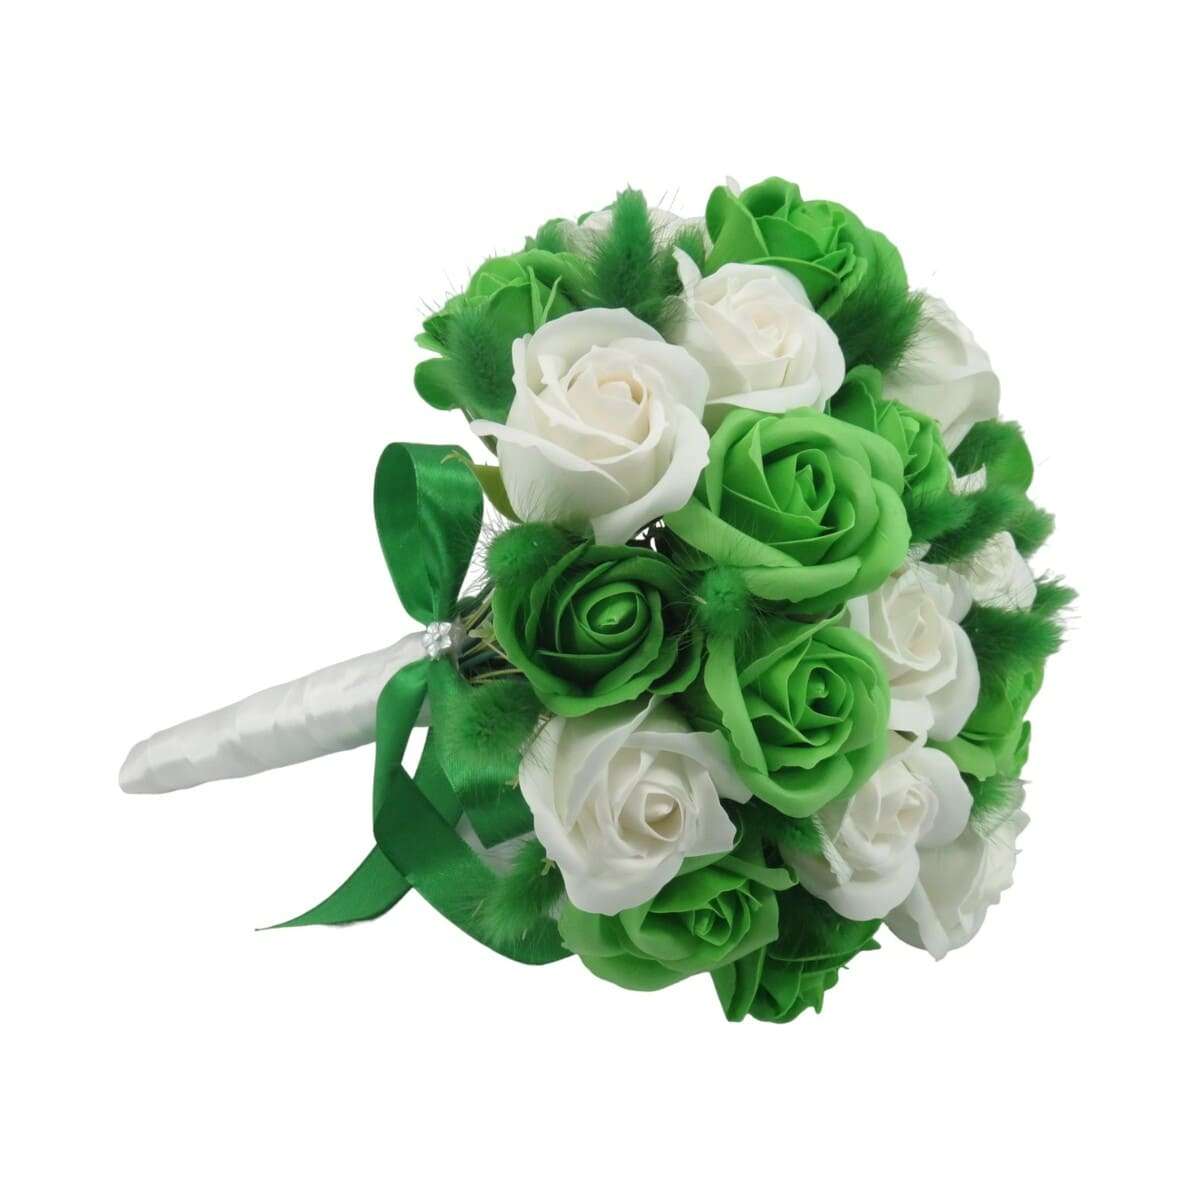 Buchet mireasanasa cu flori de sapun, alb si verde ILIF406021 (7)